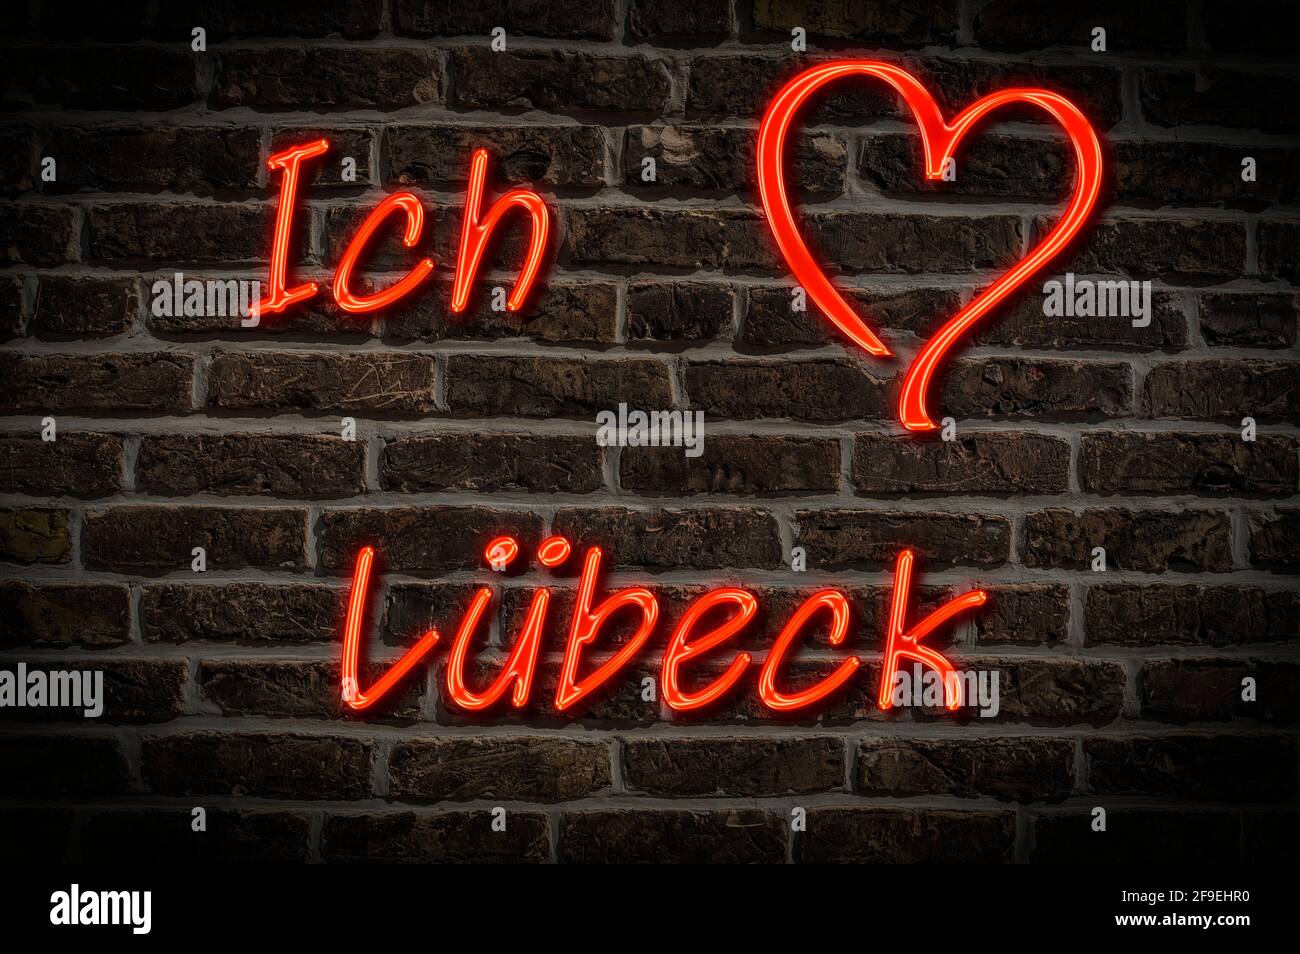 Leuchtreklame, Ich liebe Lübeck, Schleswig-Holstein, Deutschland, Europa | Illuminated advertising, I love Lübeck, Schleswig-Holstein, Germany, Europe Stock Photo